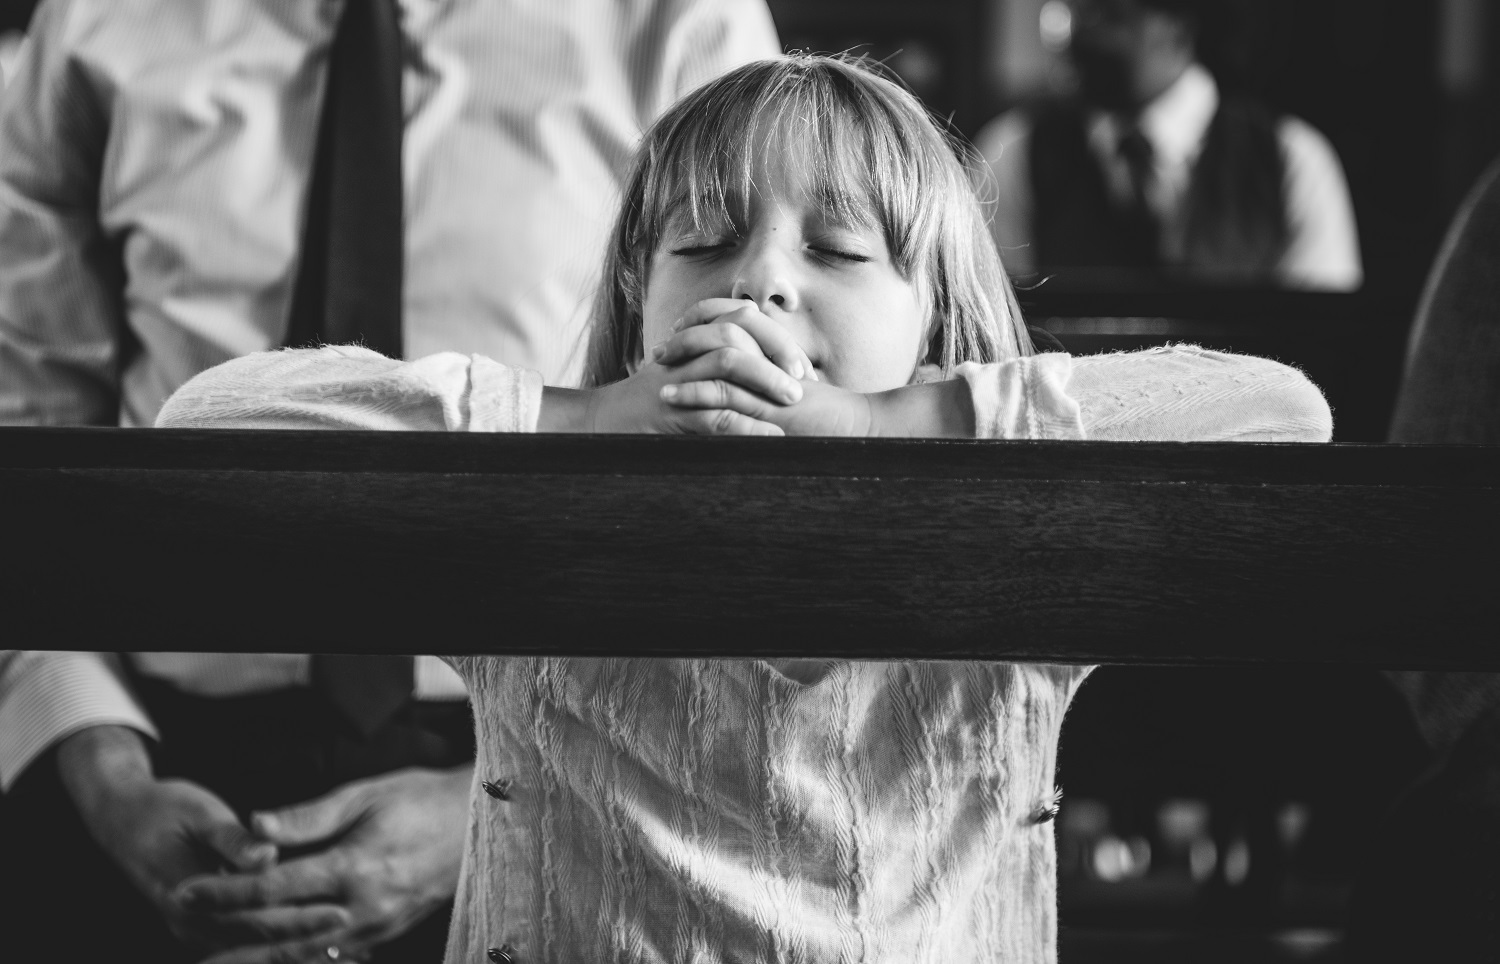 Uma imagem de uma criança rezando na igreja, relacionando ao luto infantil